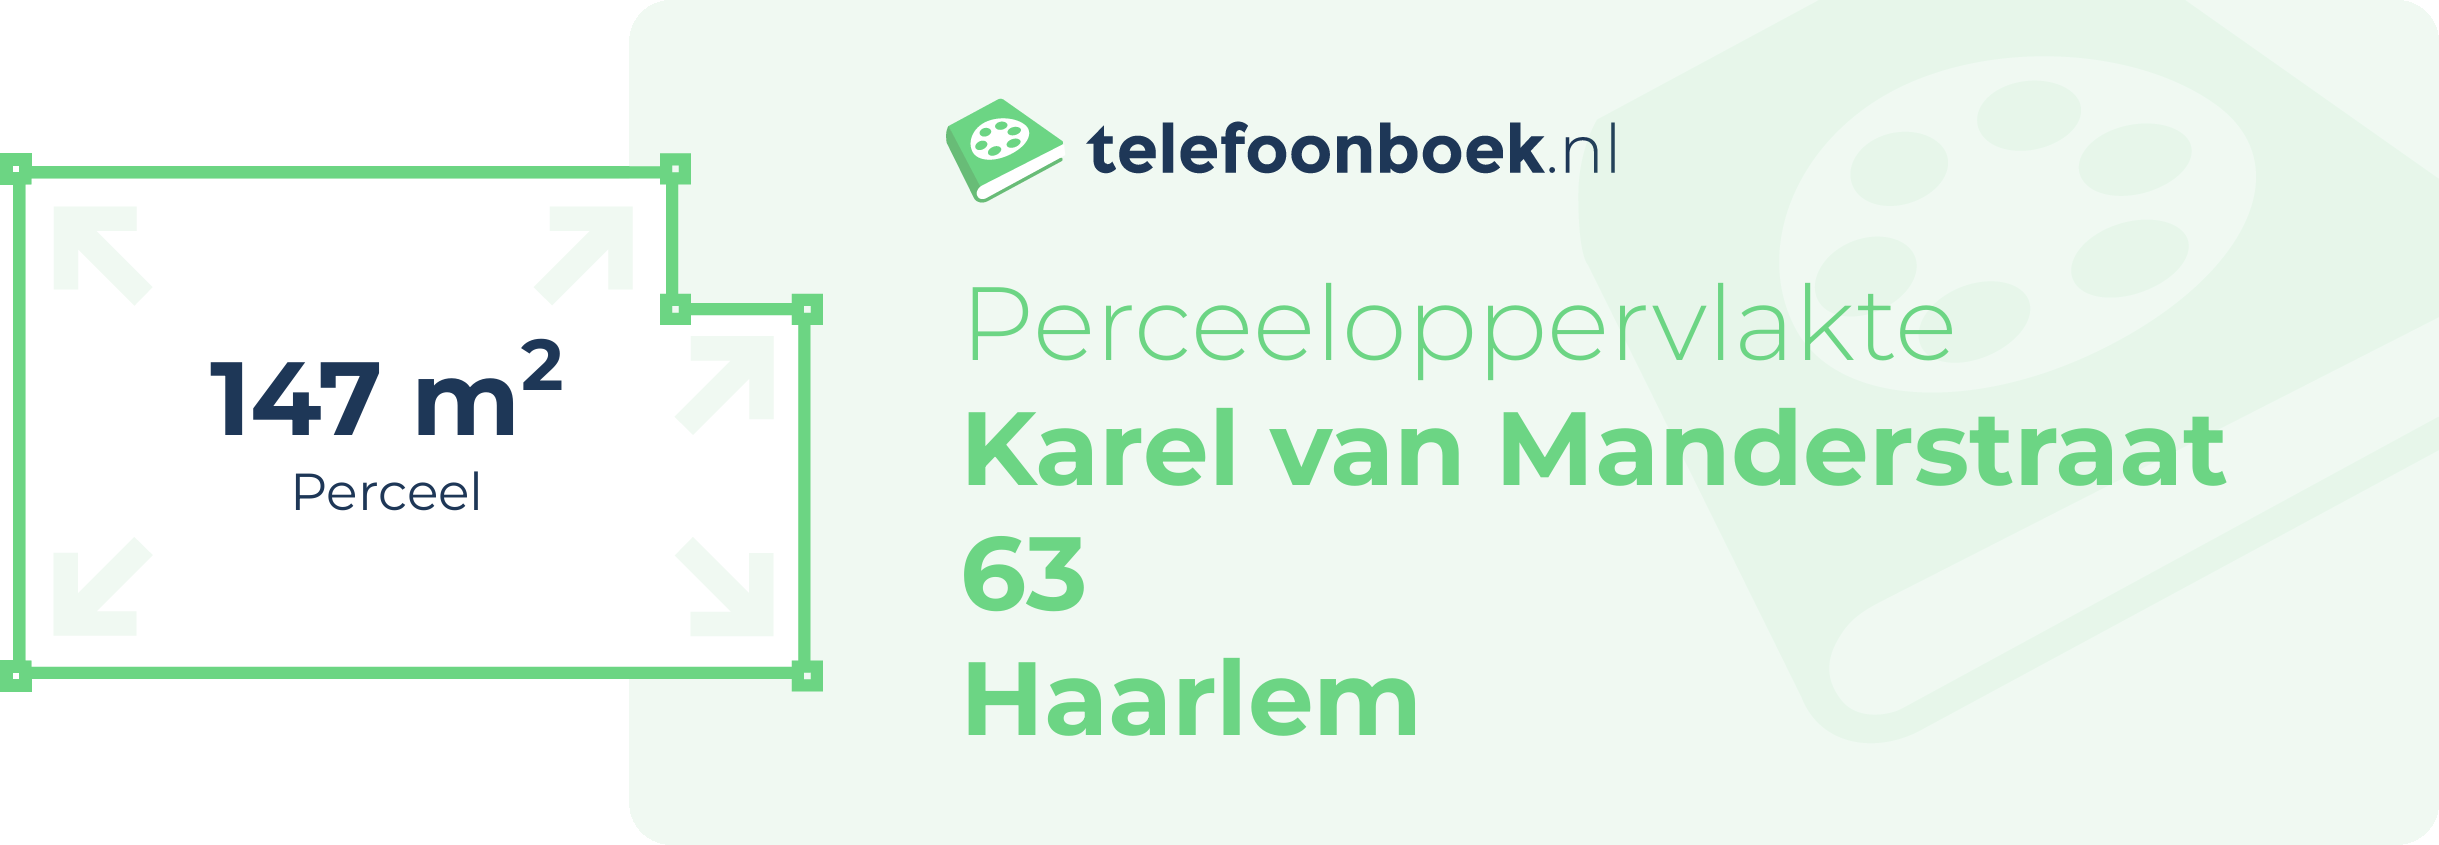 Perceeloppervlakte Karel Van Manderstraat 63 Haarlem